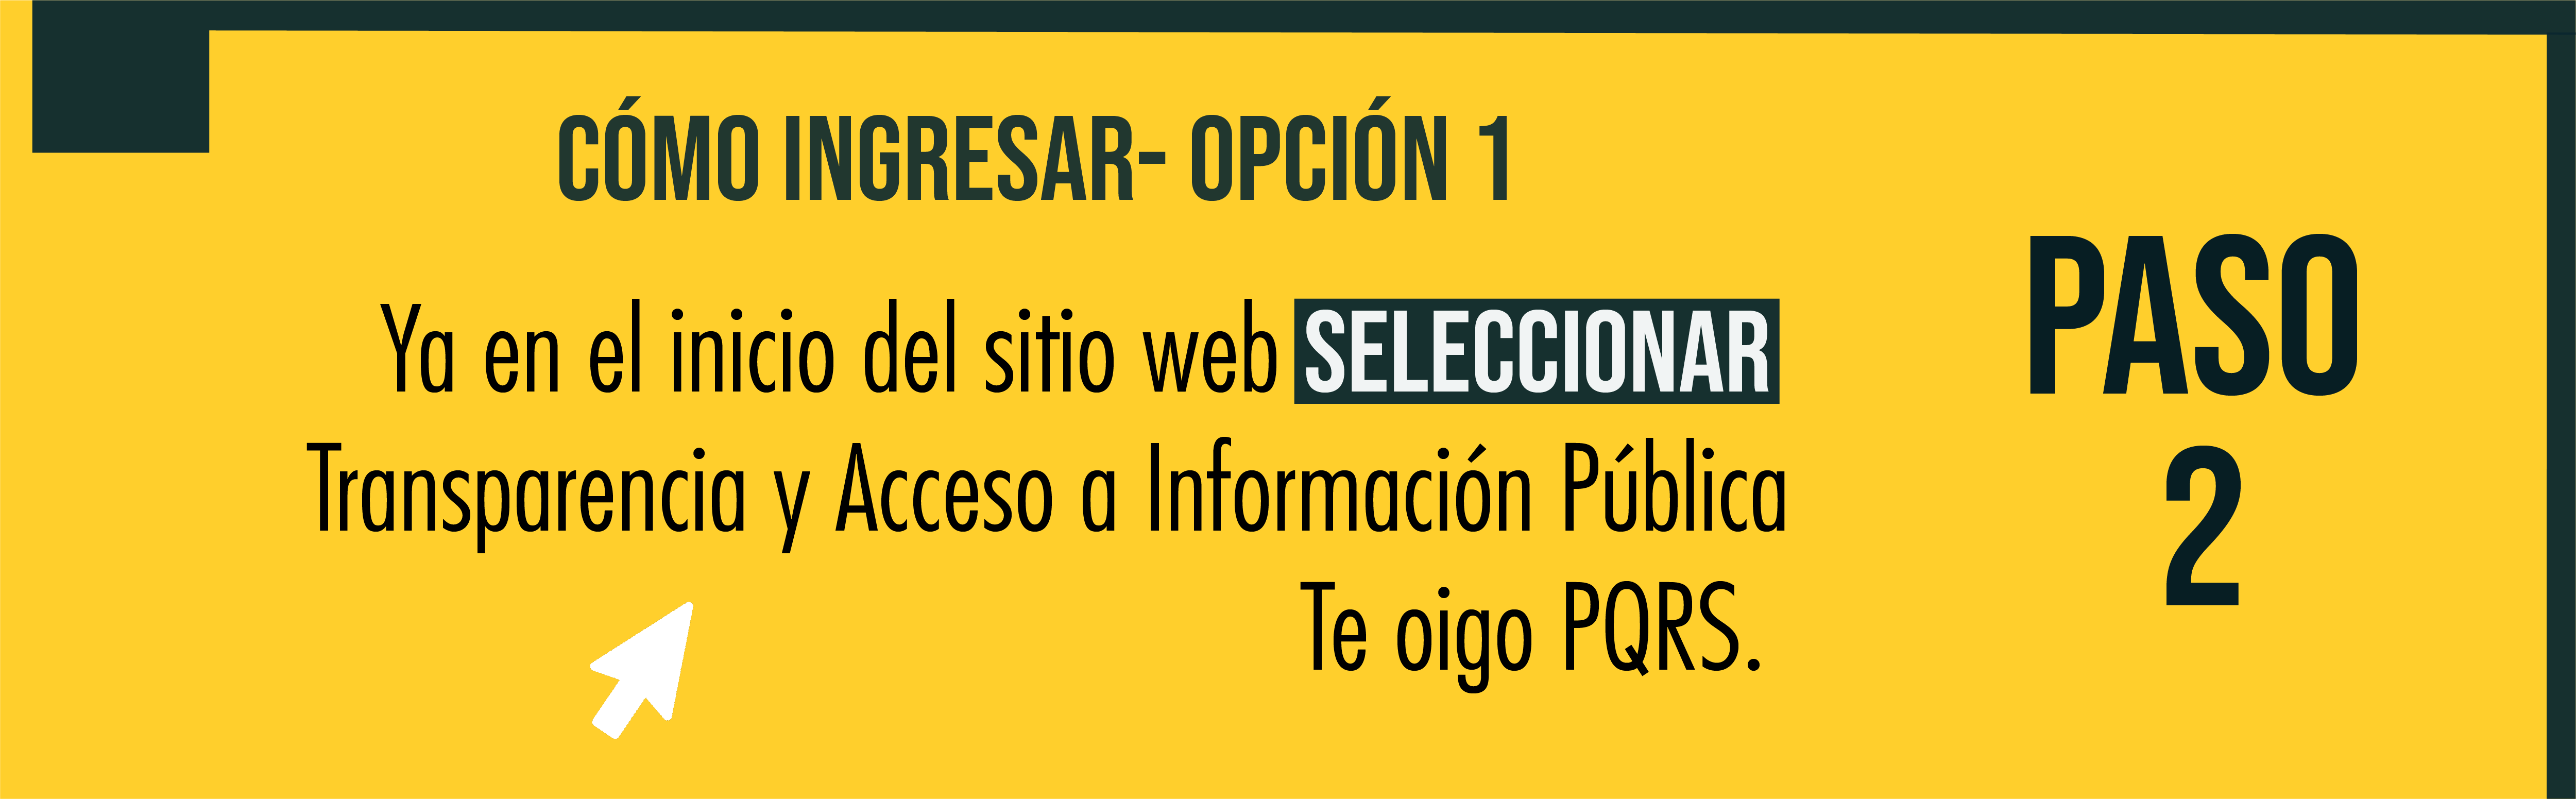 ¿Cómo ingresar? ya en el inicio del sitio web seleccionar Transparencia y Acceso a Información Pública, Te Oigo - PQRS